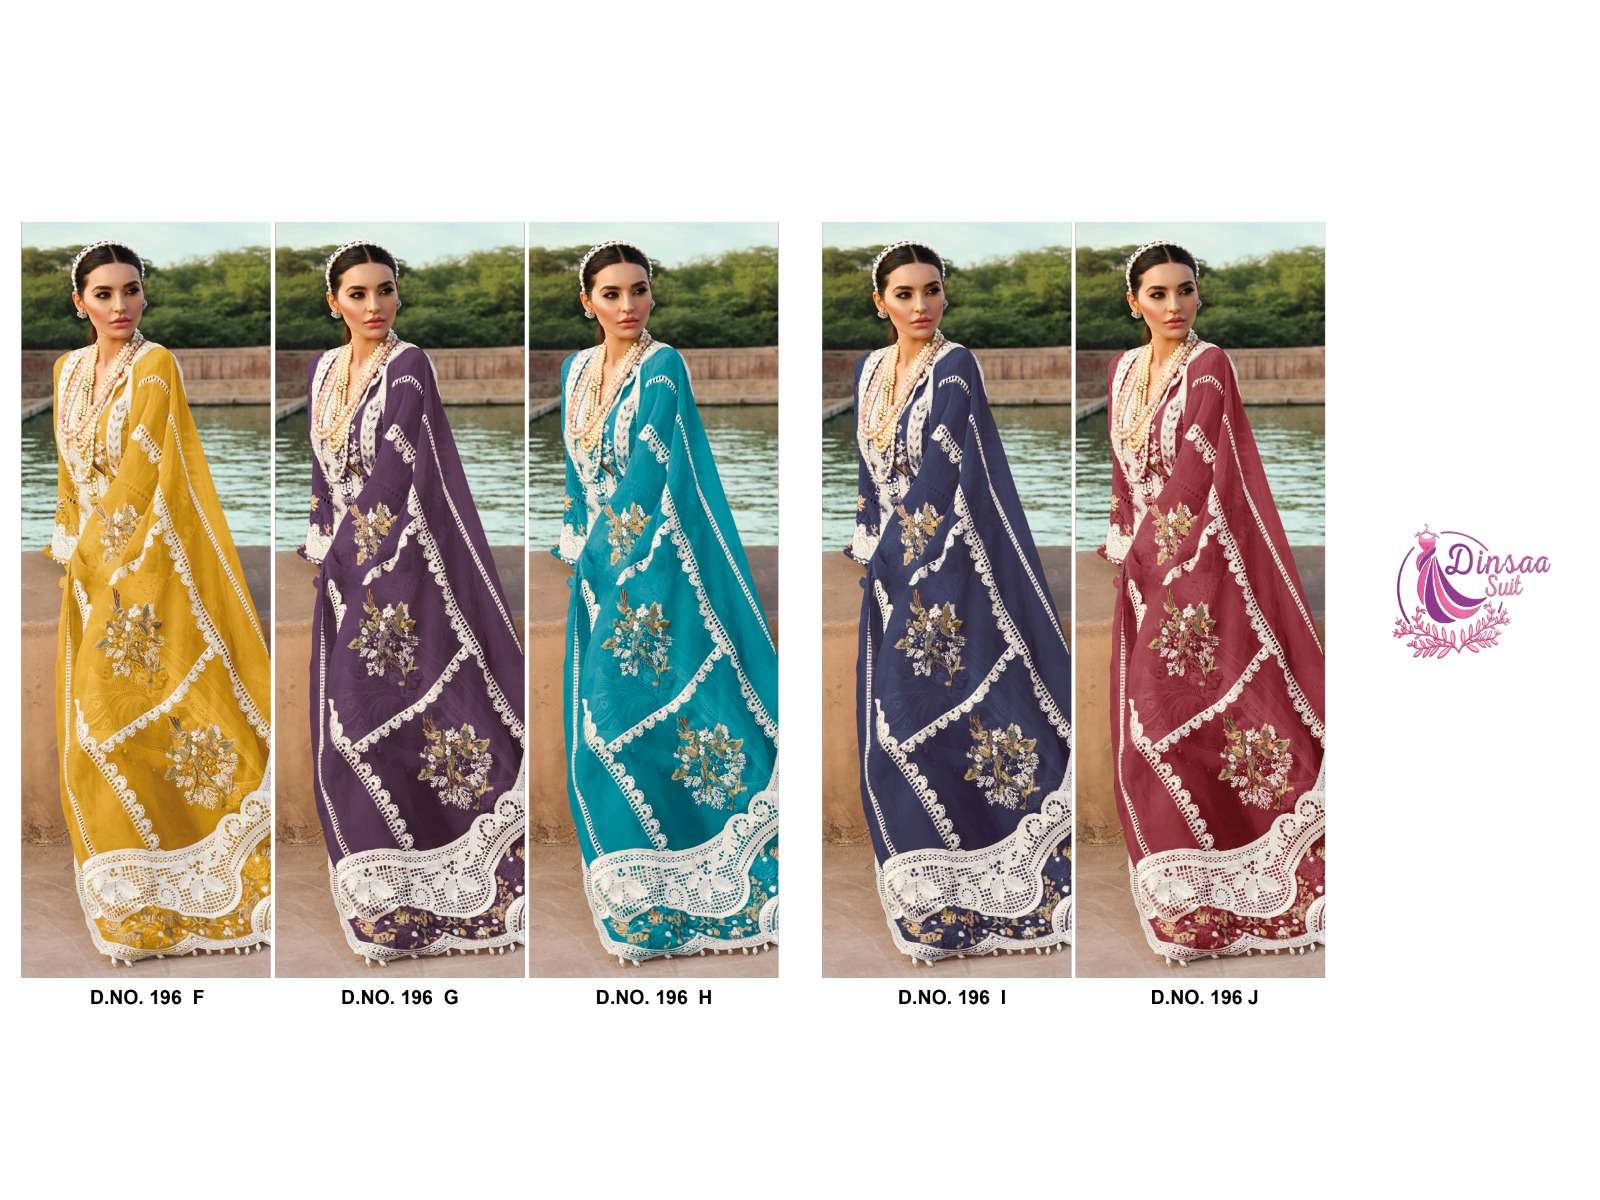 dinsaa 196 colour series designer pakistani salwar kameez wholesaler surat gujarat